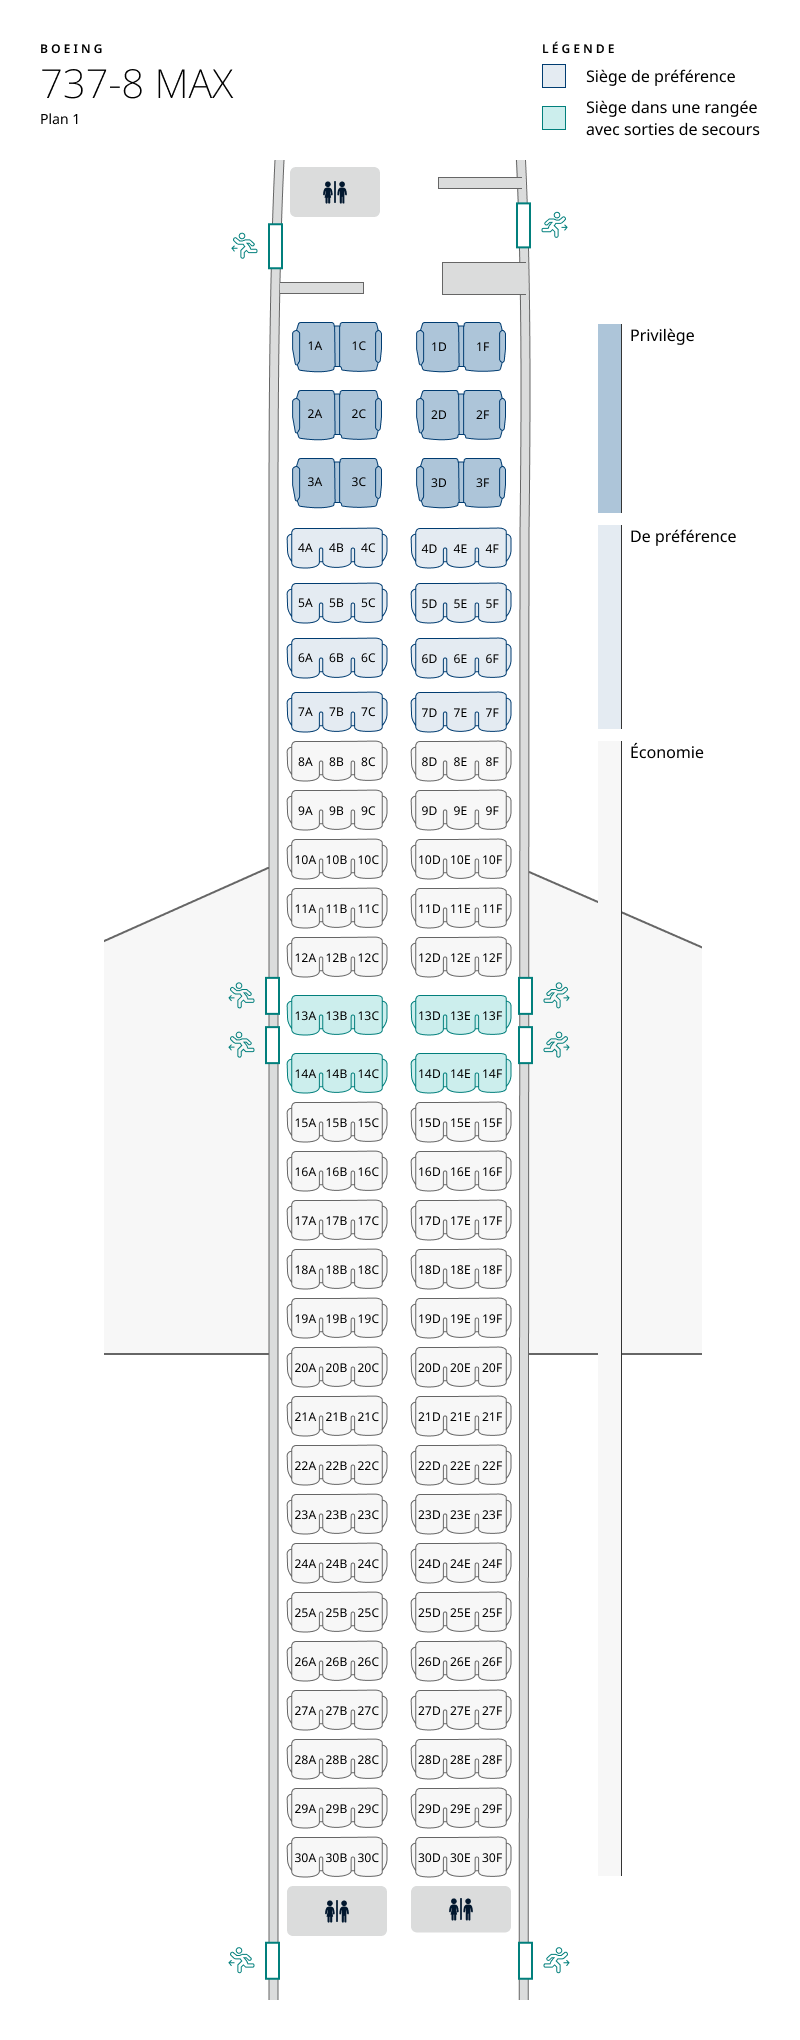 Plan de cabine de l’appareil 737 MAX 8, configuration 1. Les renseignements sur les sièges sont disponibles dans le tableau ci-dessous :